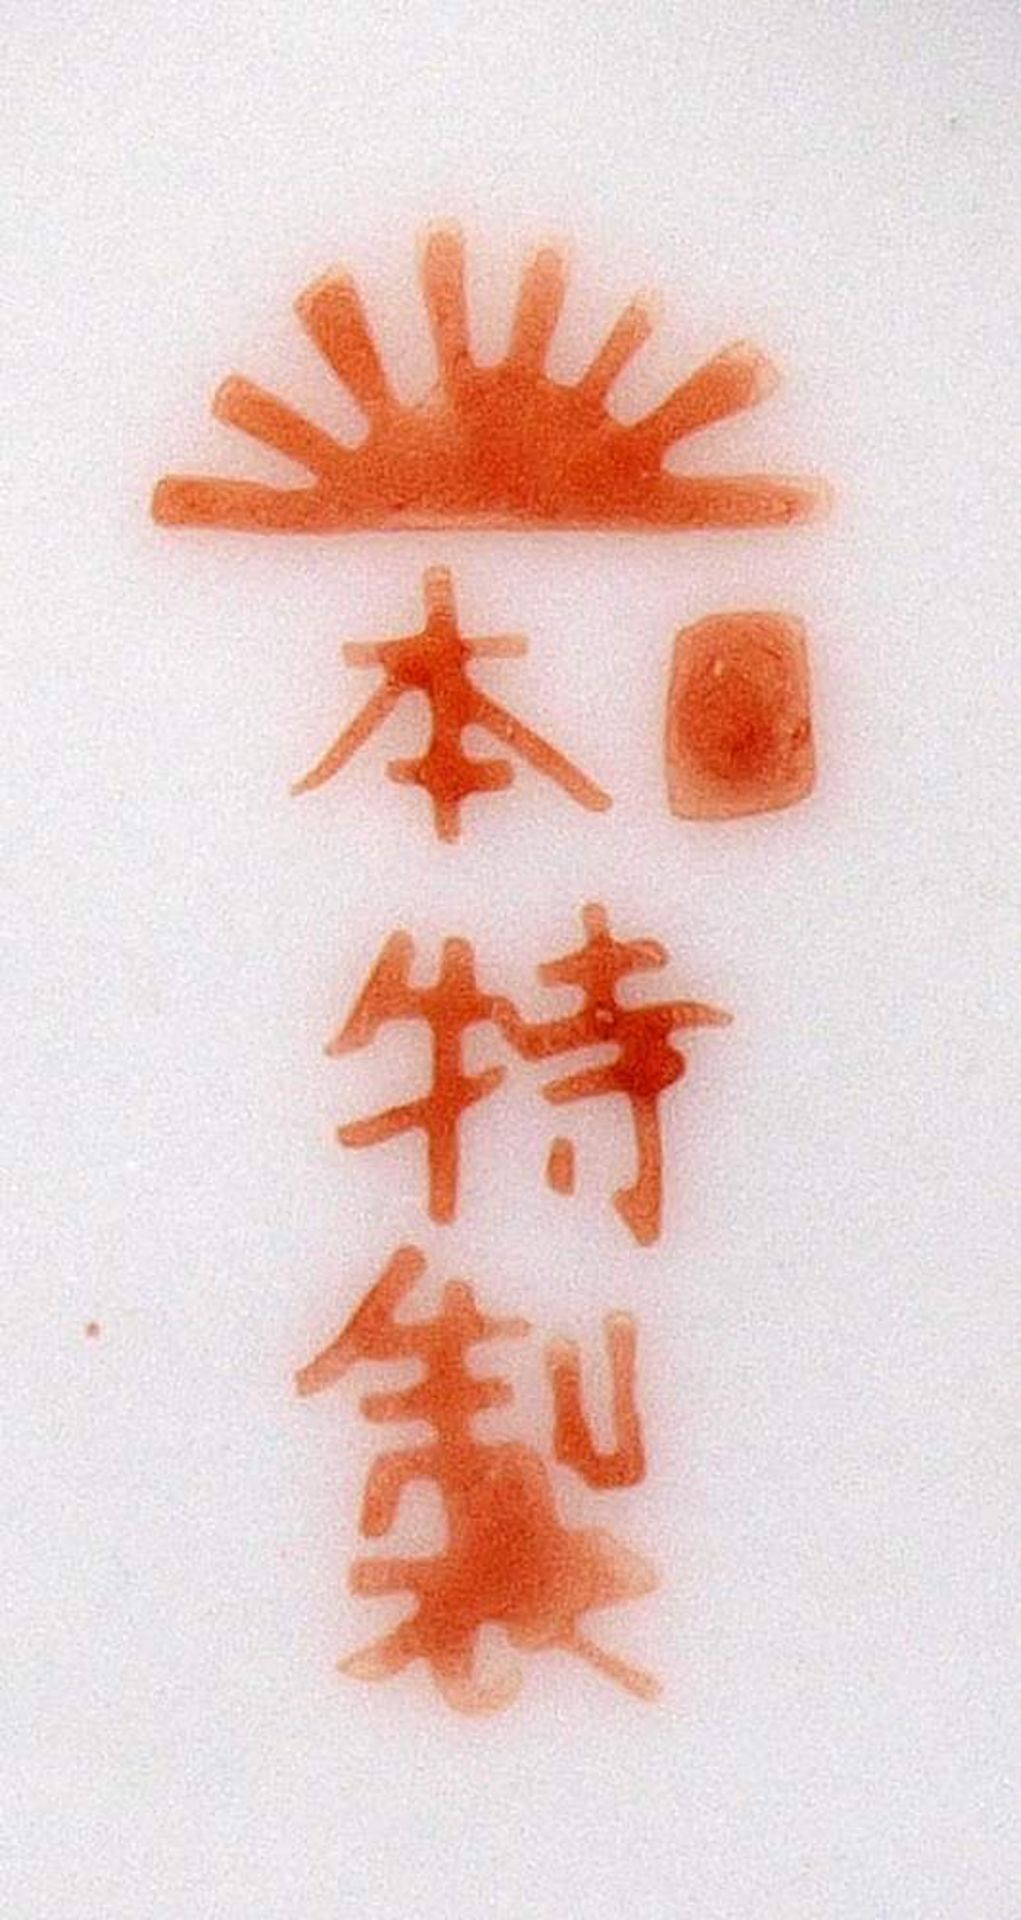 Sakegarnitur, JapanBestehend aus Sakeflasche mit Deckel und sechs Schälchen. Eisenrote Bodenmarke, - Bild 2 aus 2